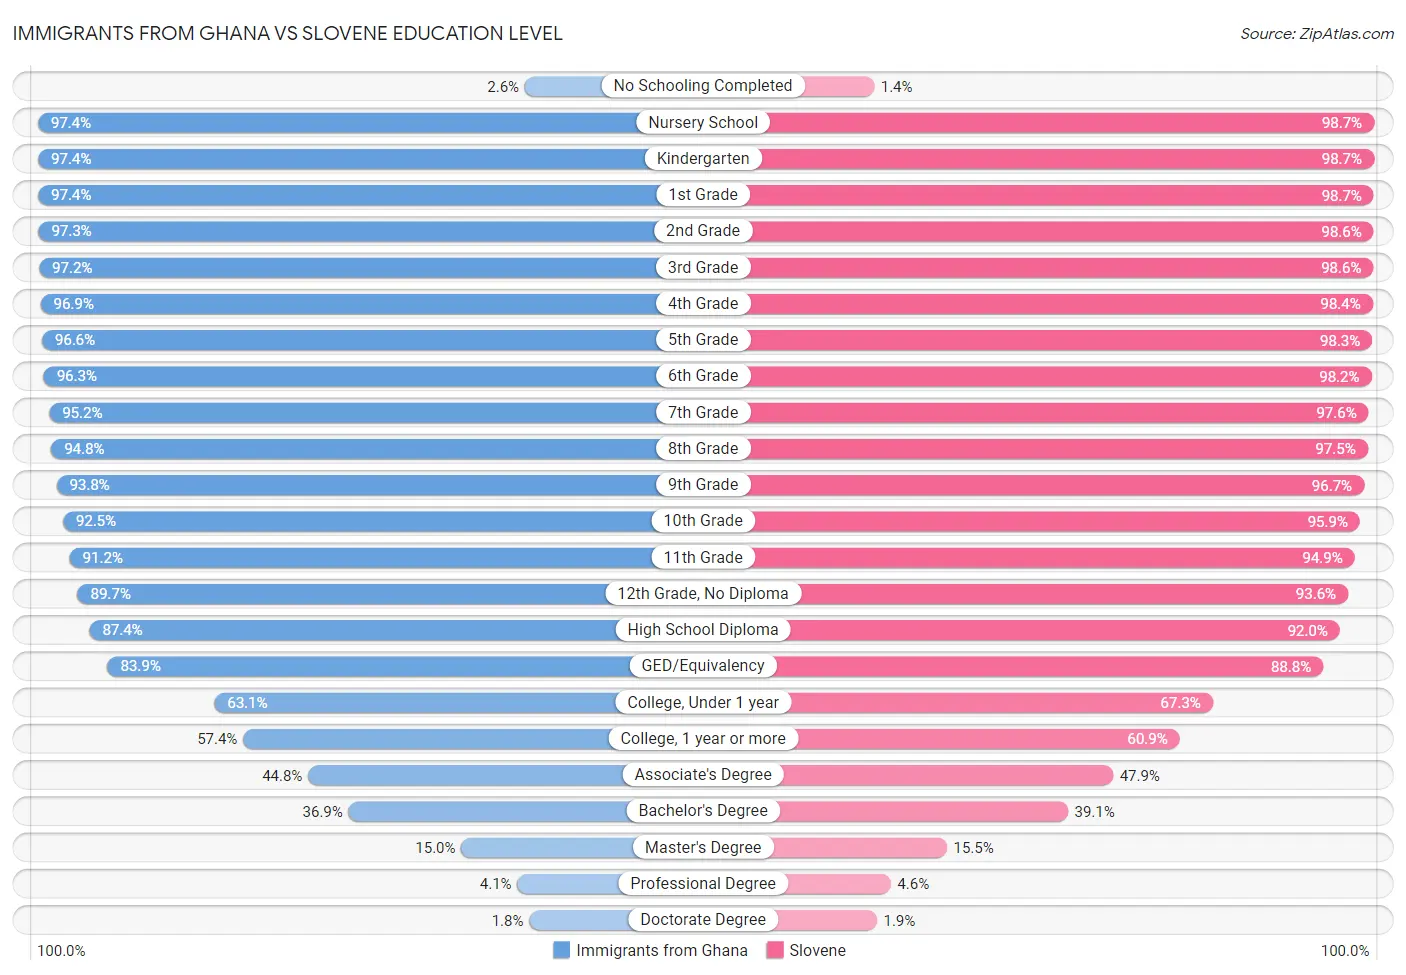 Immigrants from Ghana vs Slovene Education Level